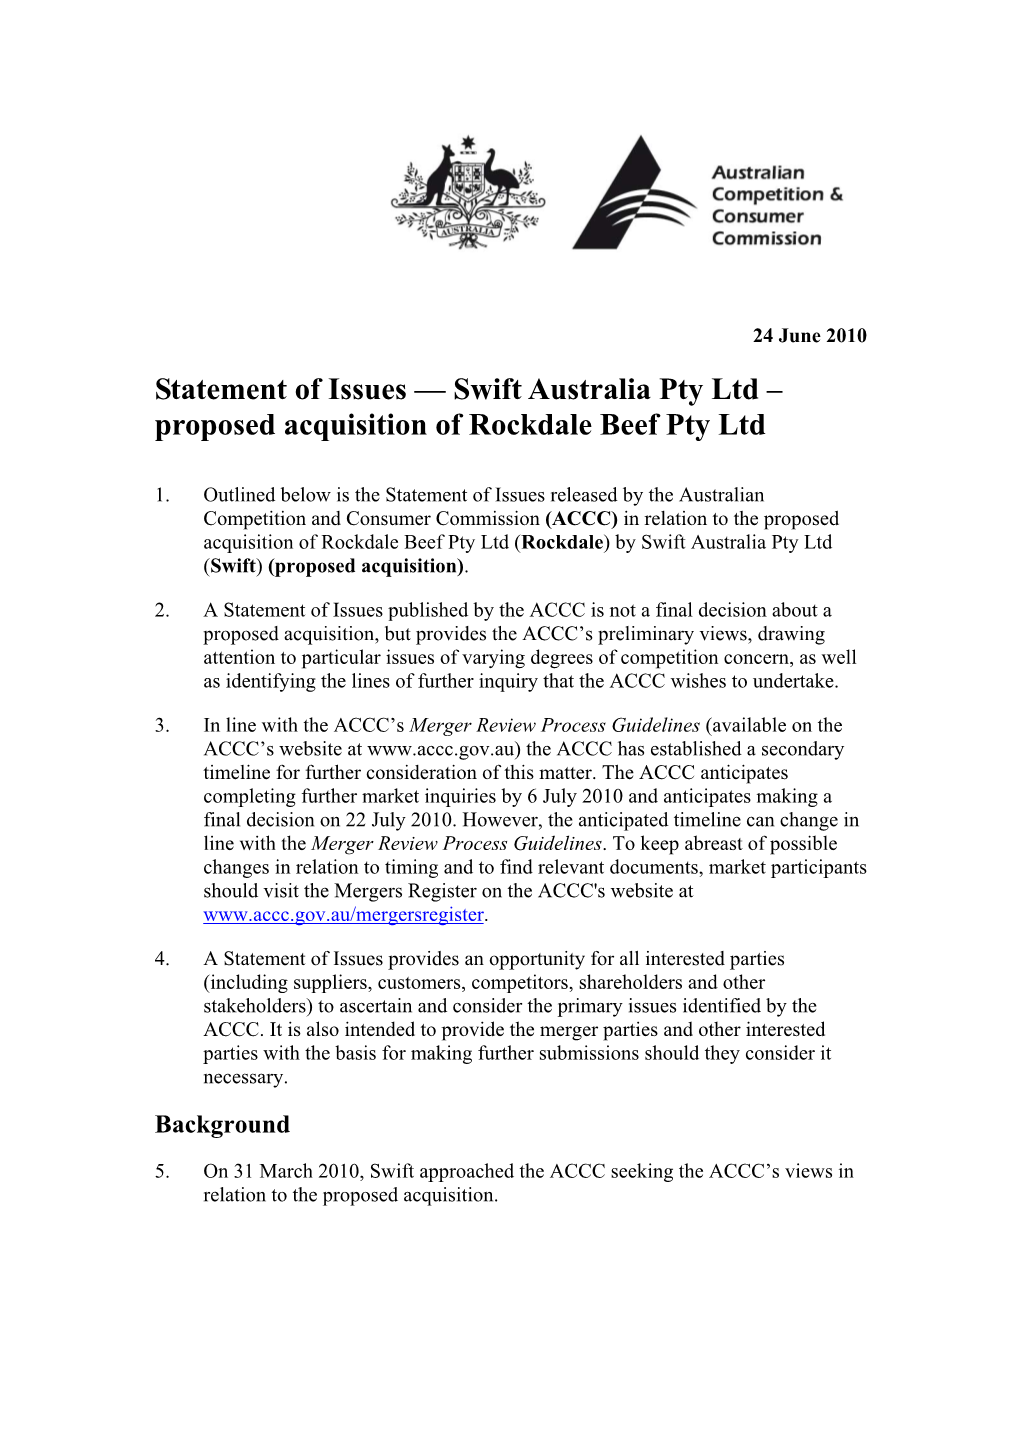 Swift Australia Pty Ltd – Proposed Acquisition of Rockdale Beef Pty Ltd